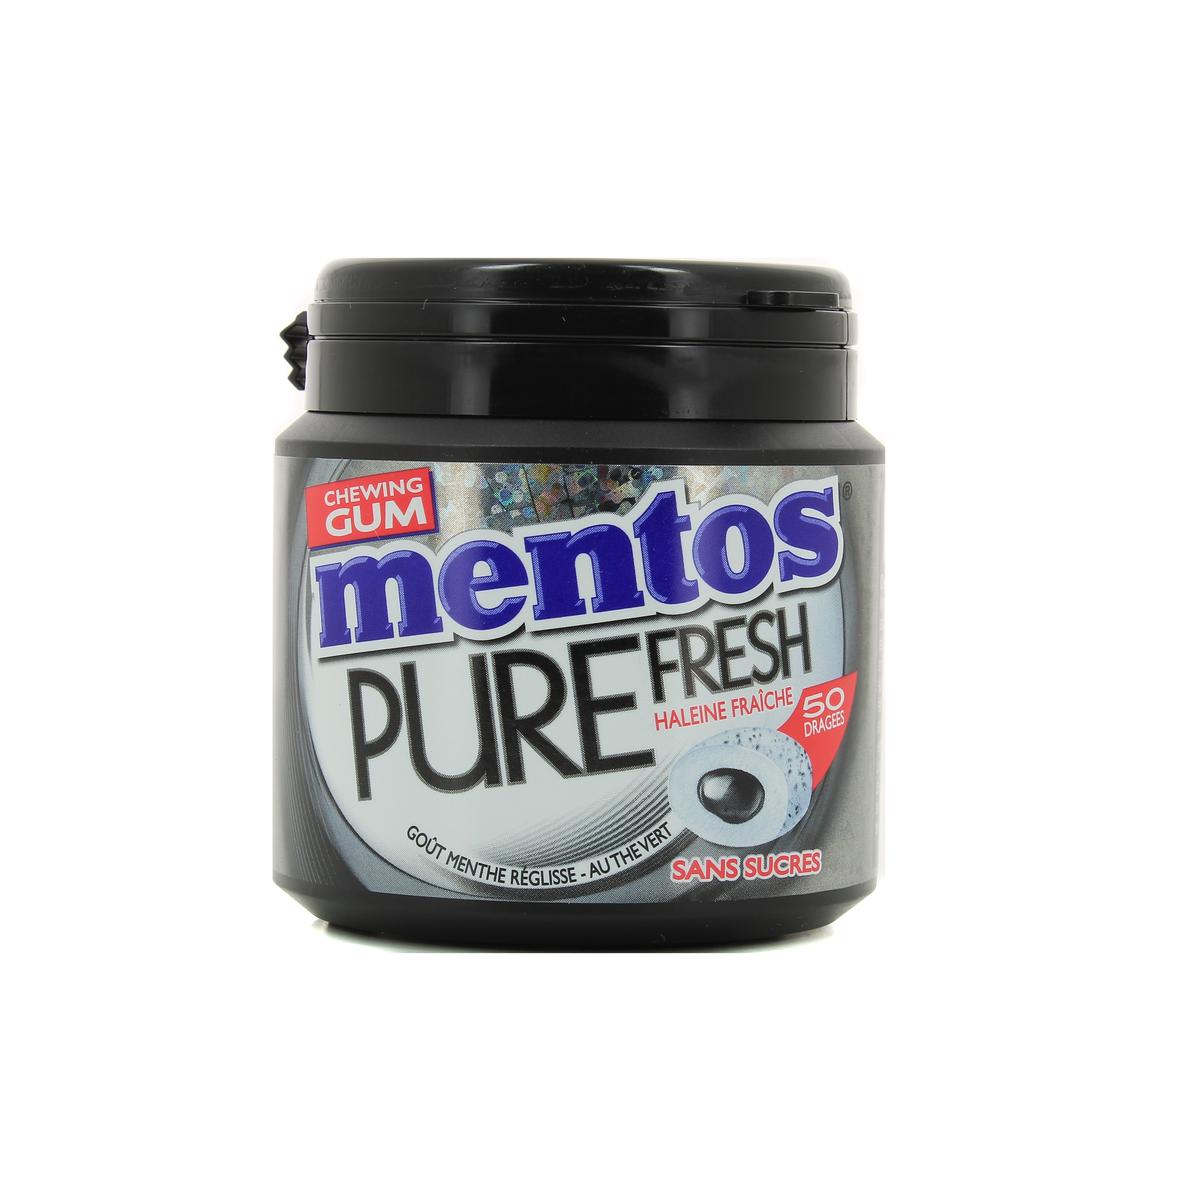 Achat Mentos Chewing-gum pure fresh menthe réglisse sans sucres, 100g